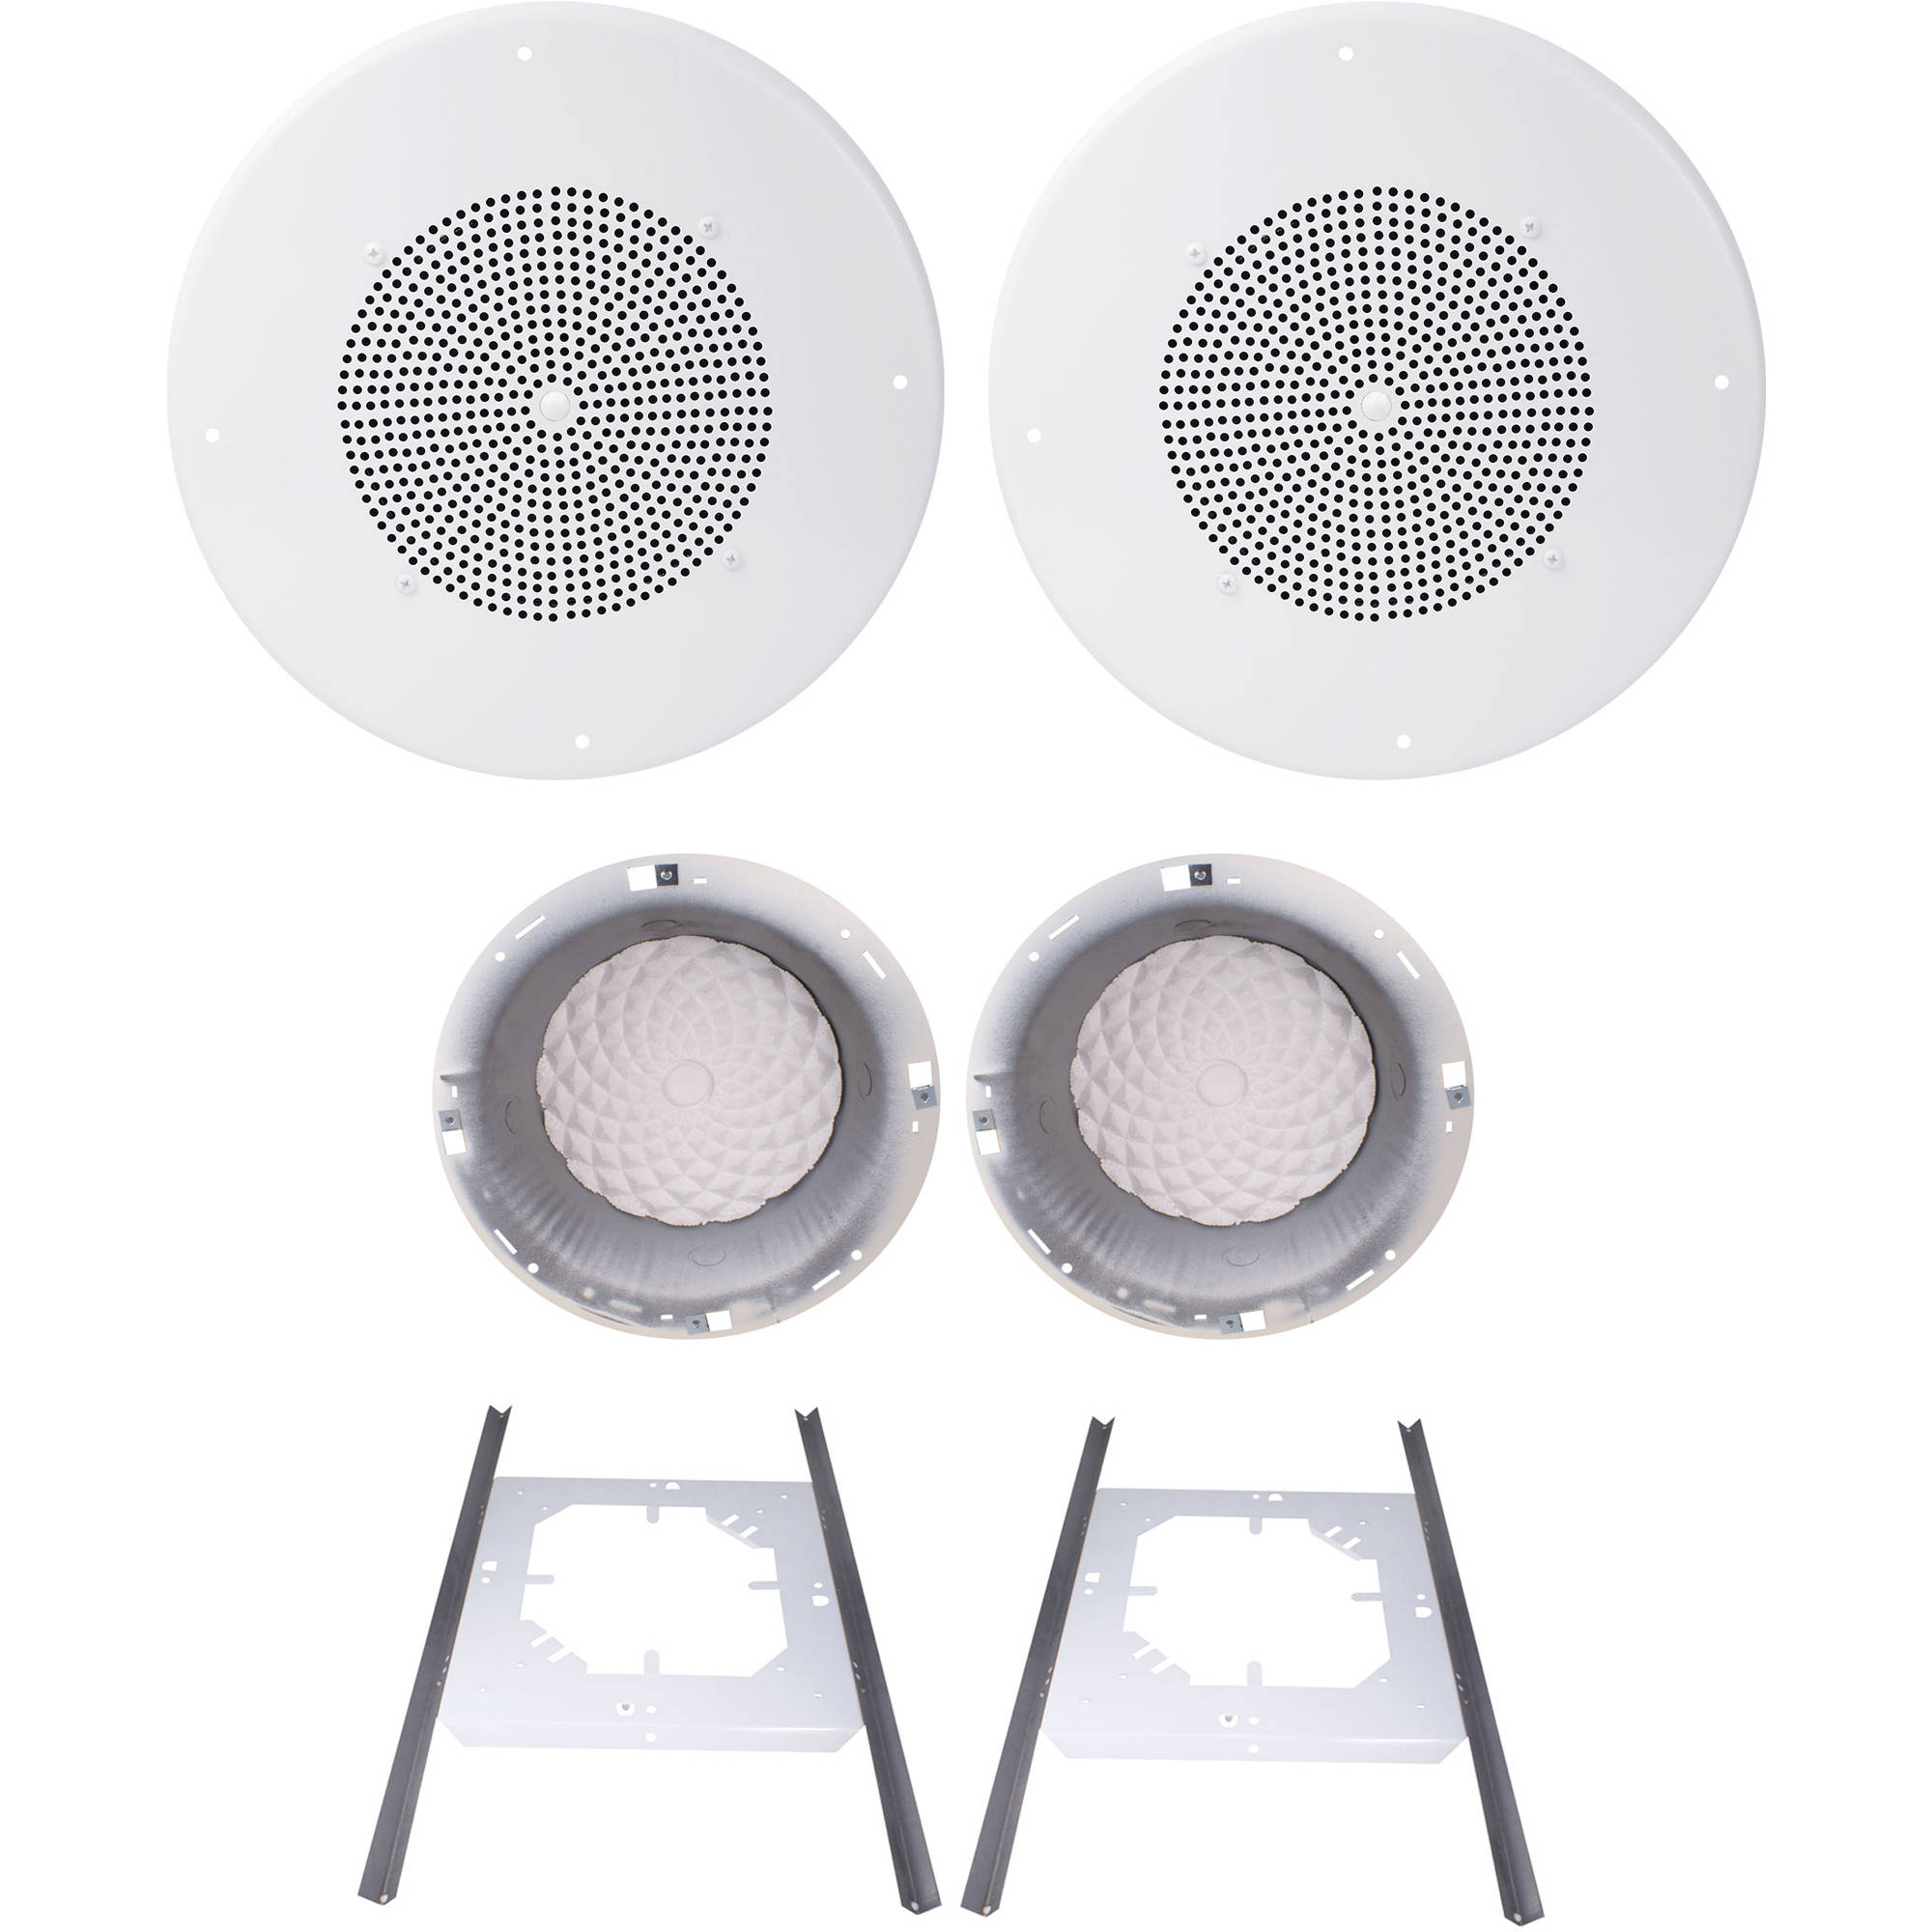 Speco Technologies G86tcg 8 70 25v Classic Grille In Ceiling Speaker Kit Off White